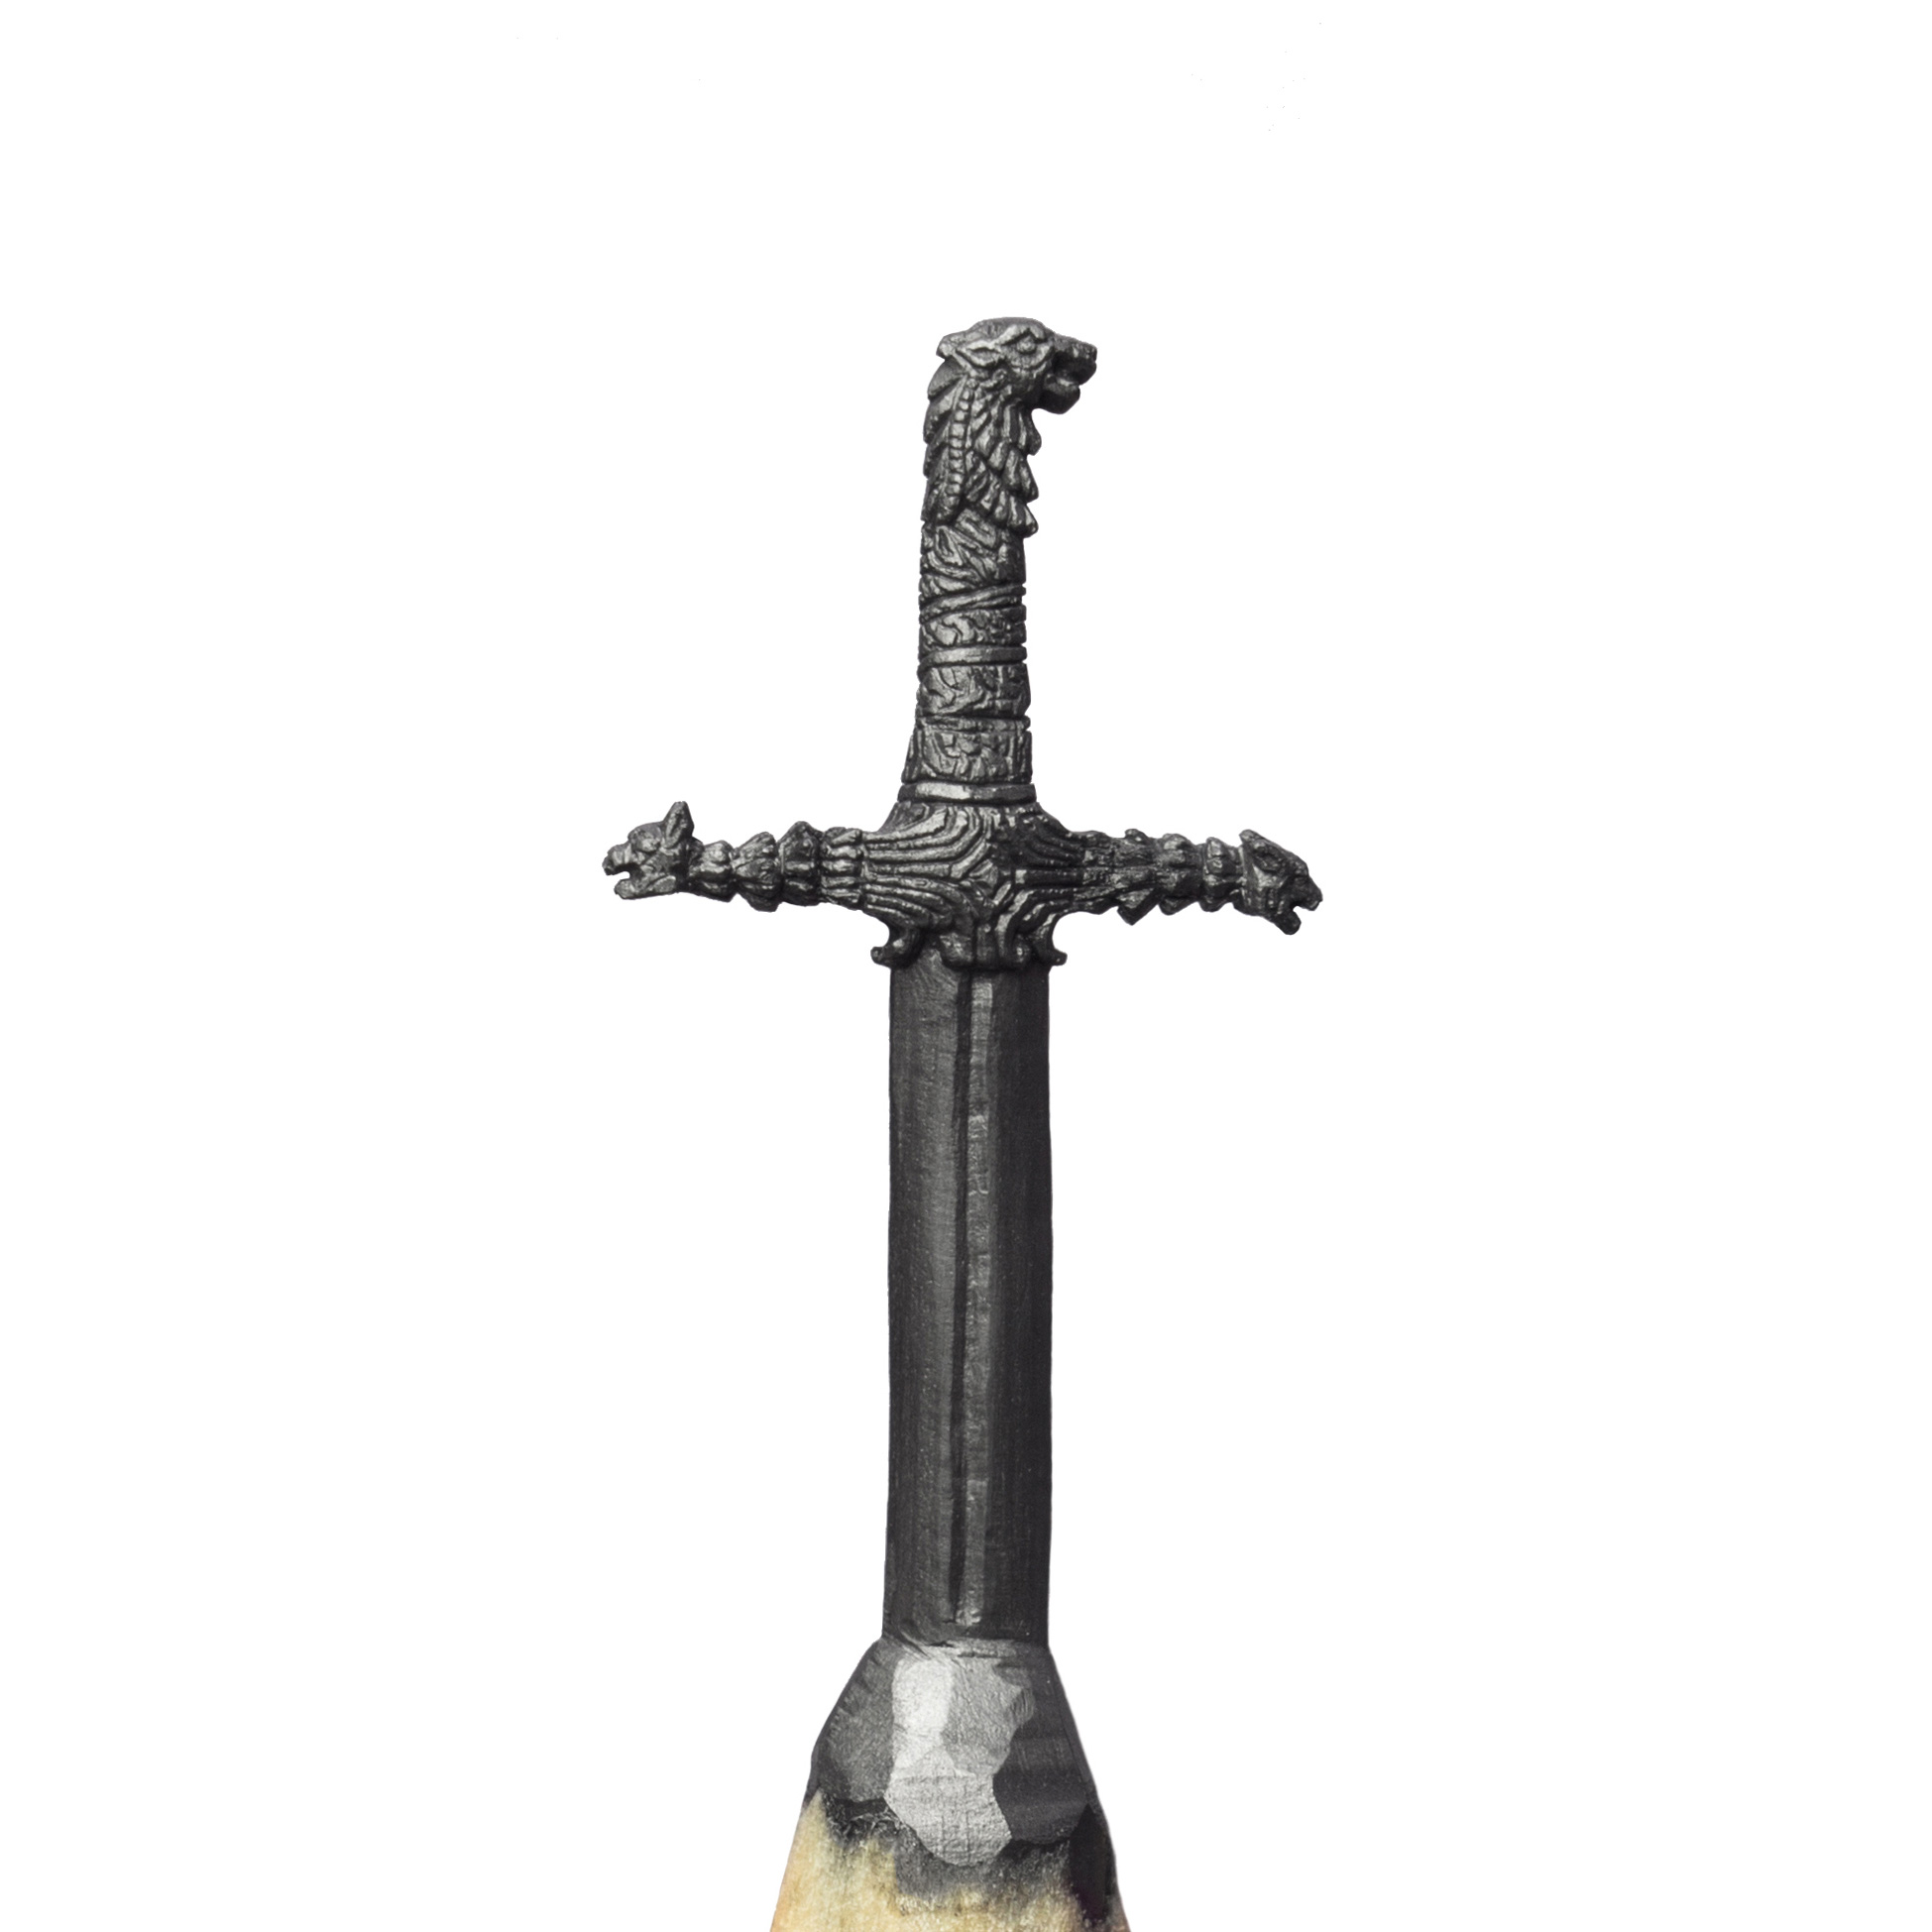 The sword – Brienne of Tarth’s Oathkeeper. / www.salavatfidai.com